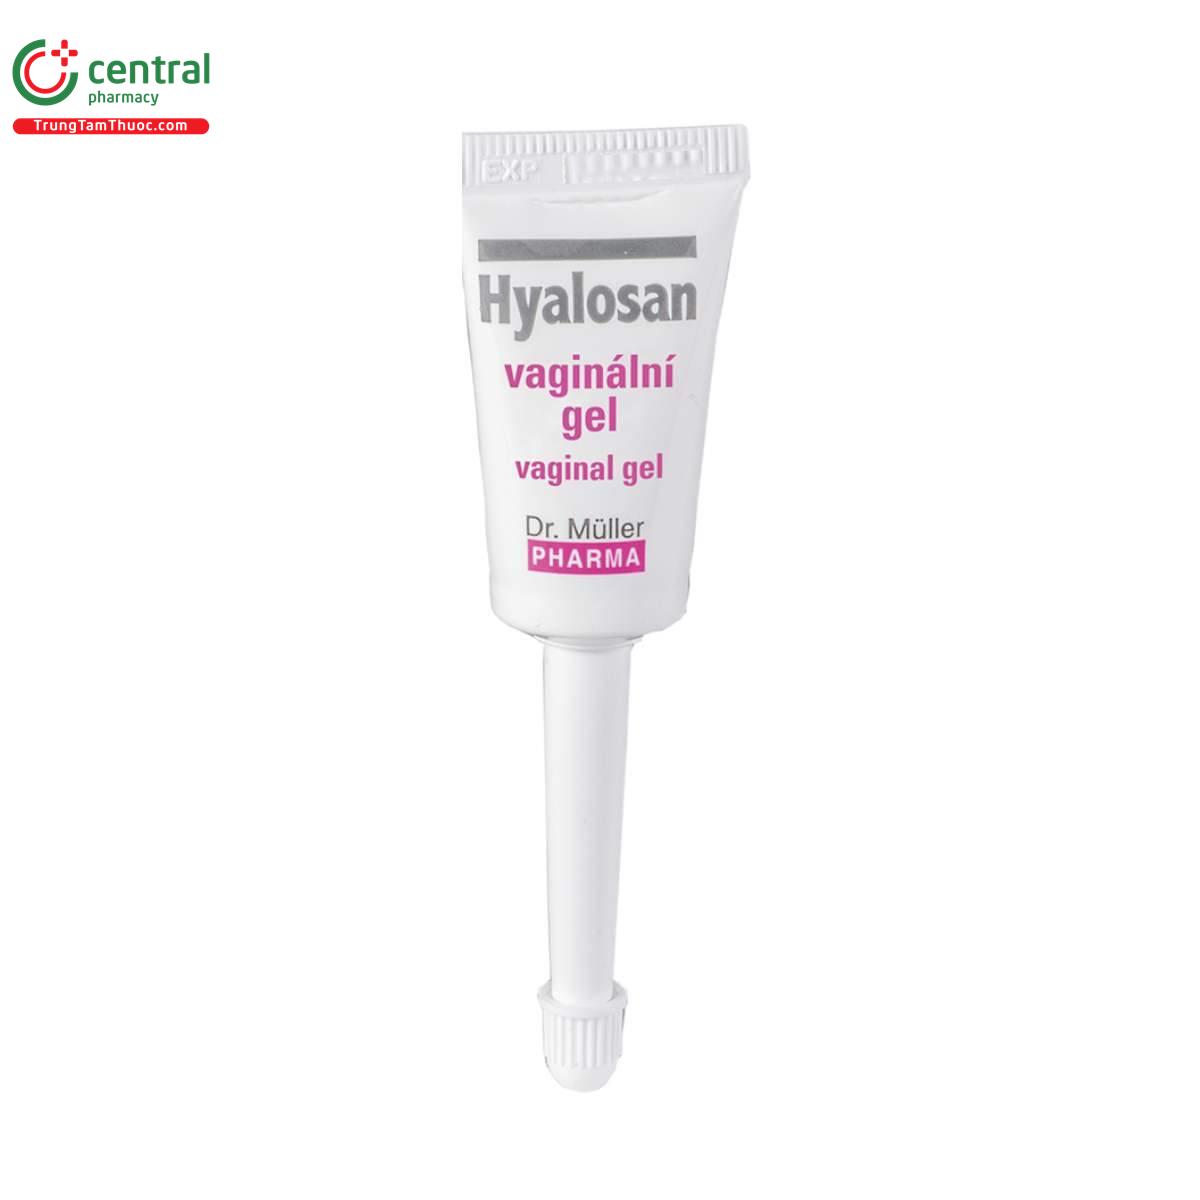 hyalosan vaginal gel 4 A0871